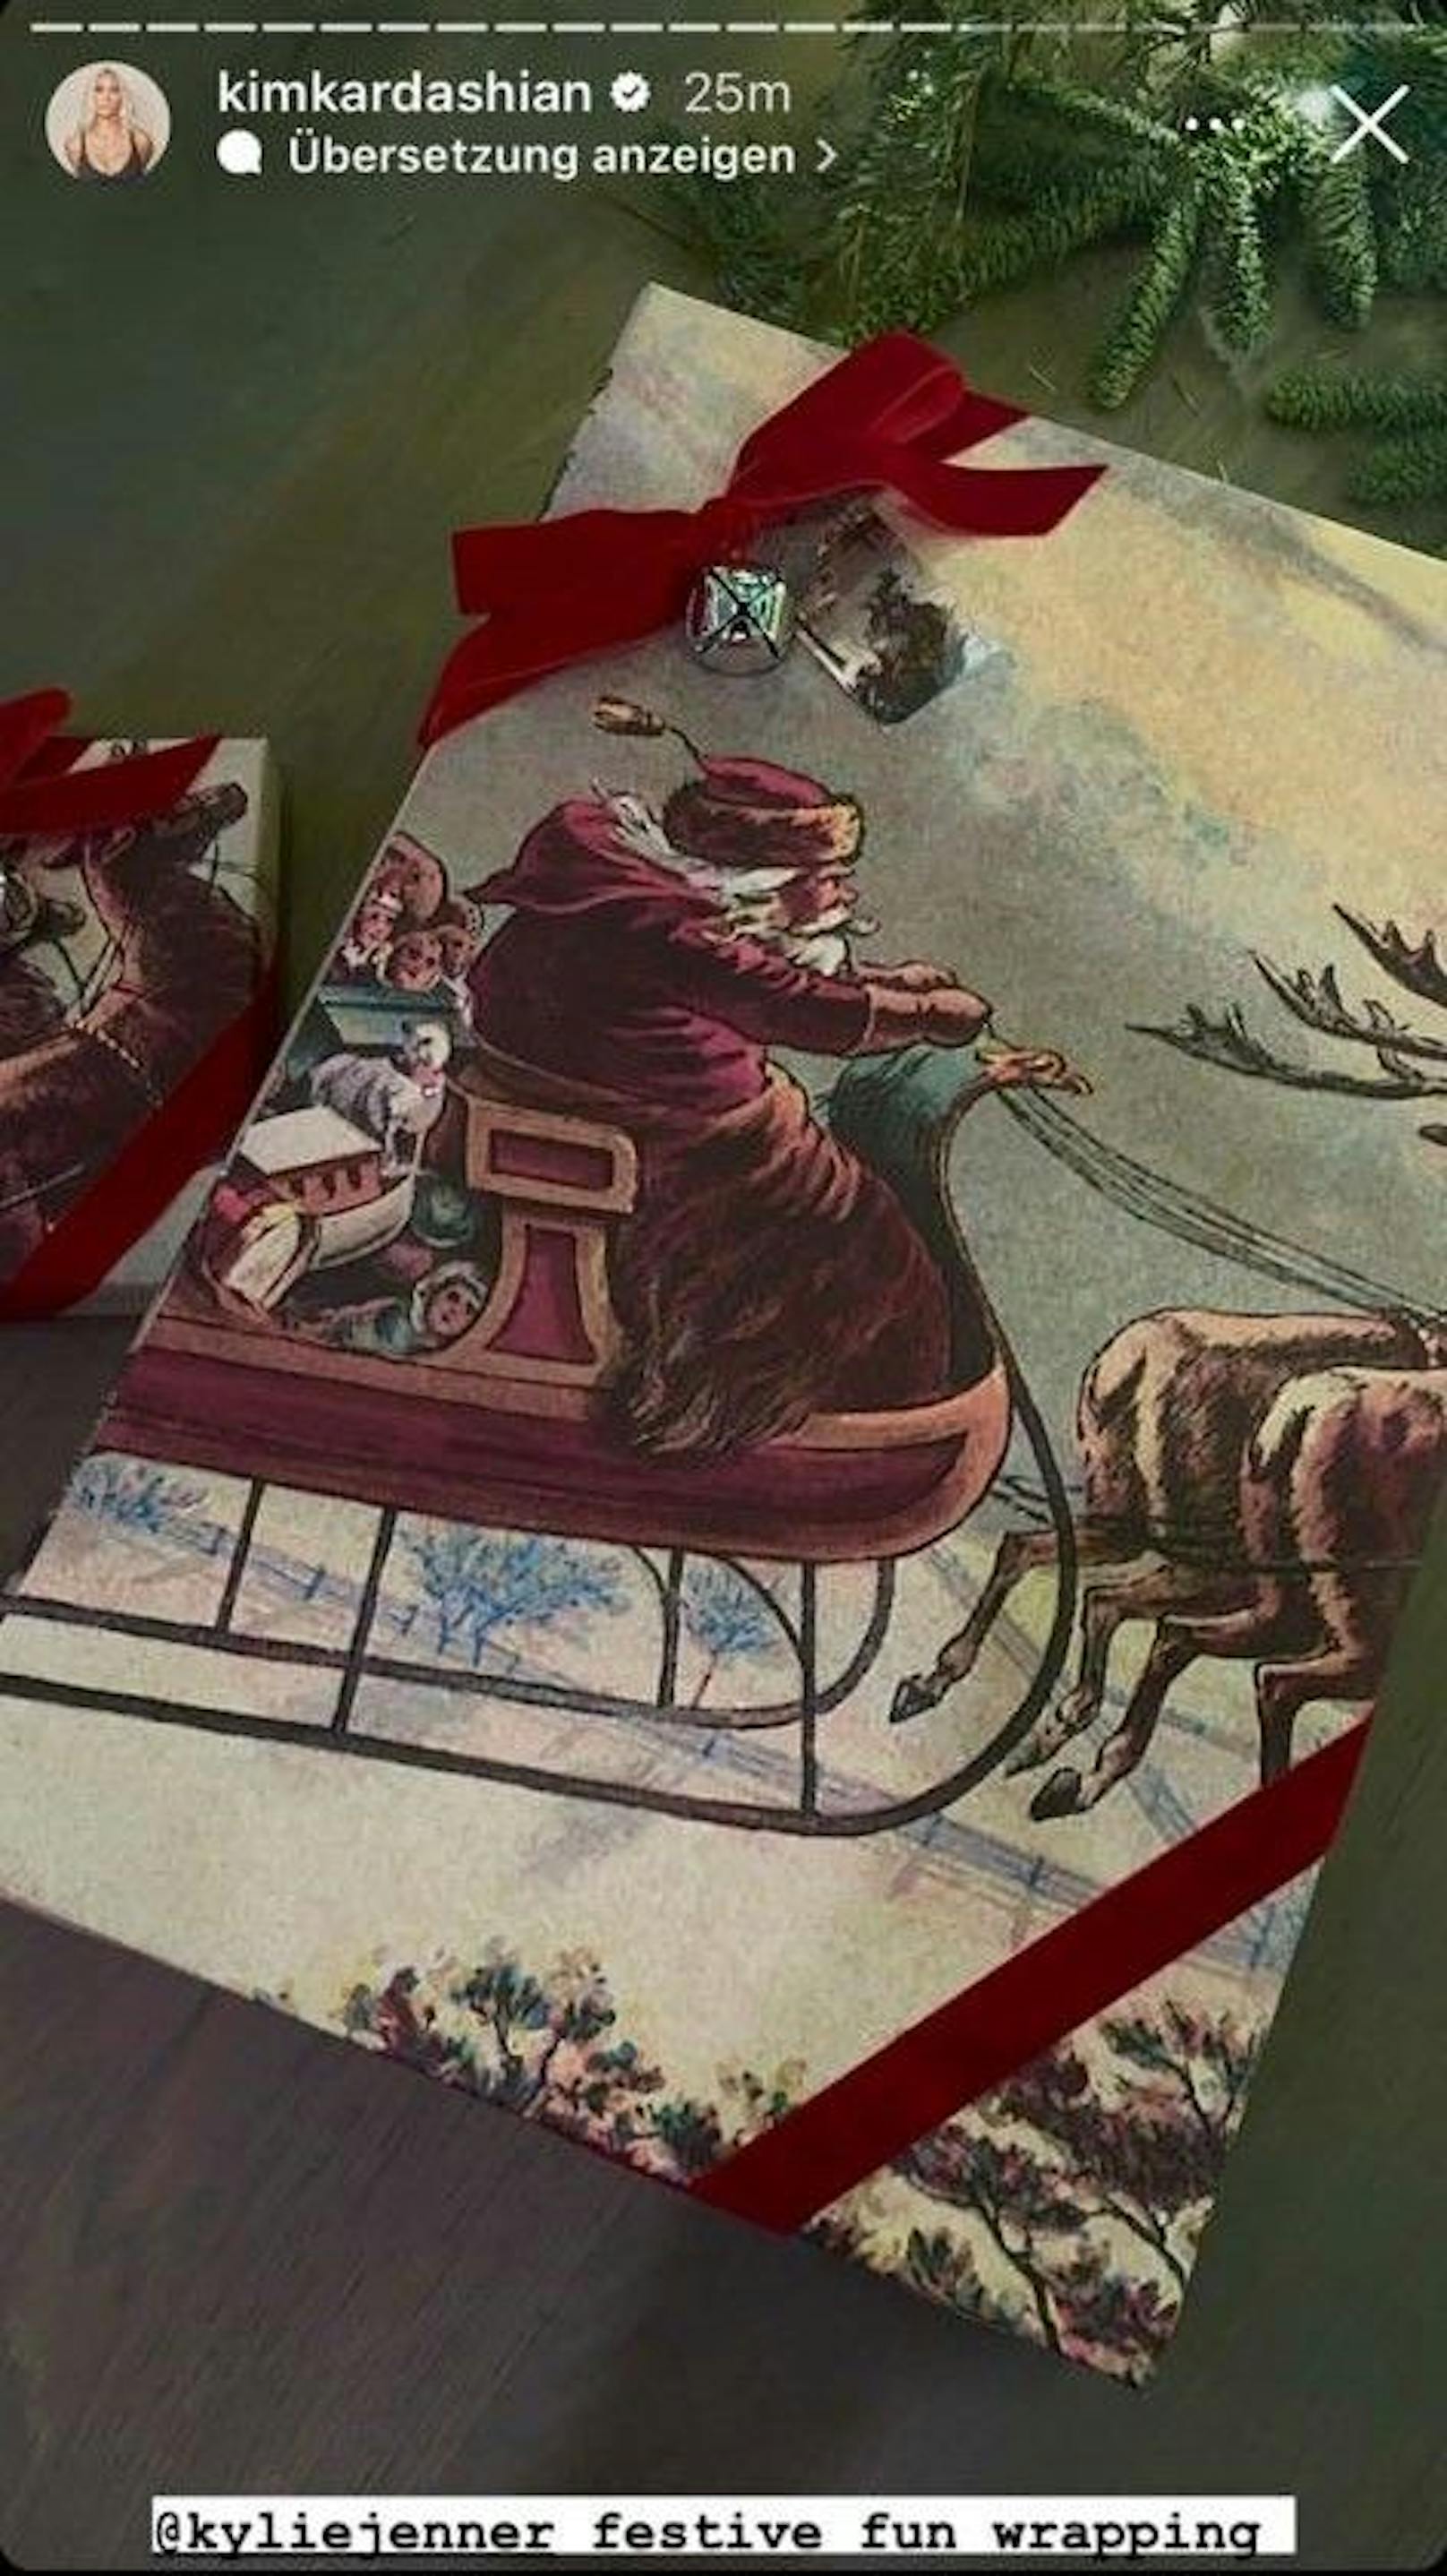 Schwester Kylie Jenner entschied sich für ein klassisches "Santa Clause"-Motiv.